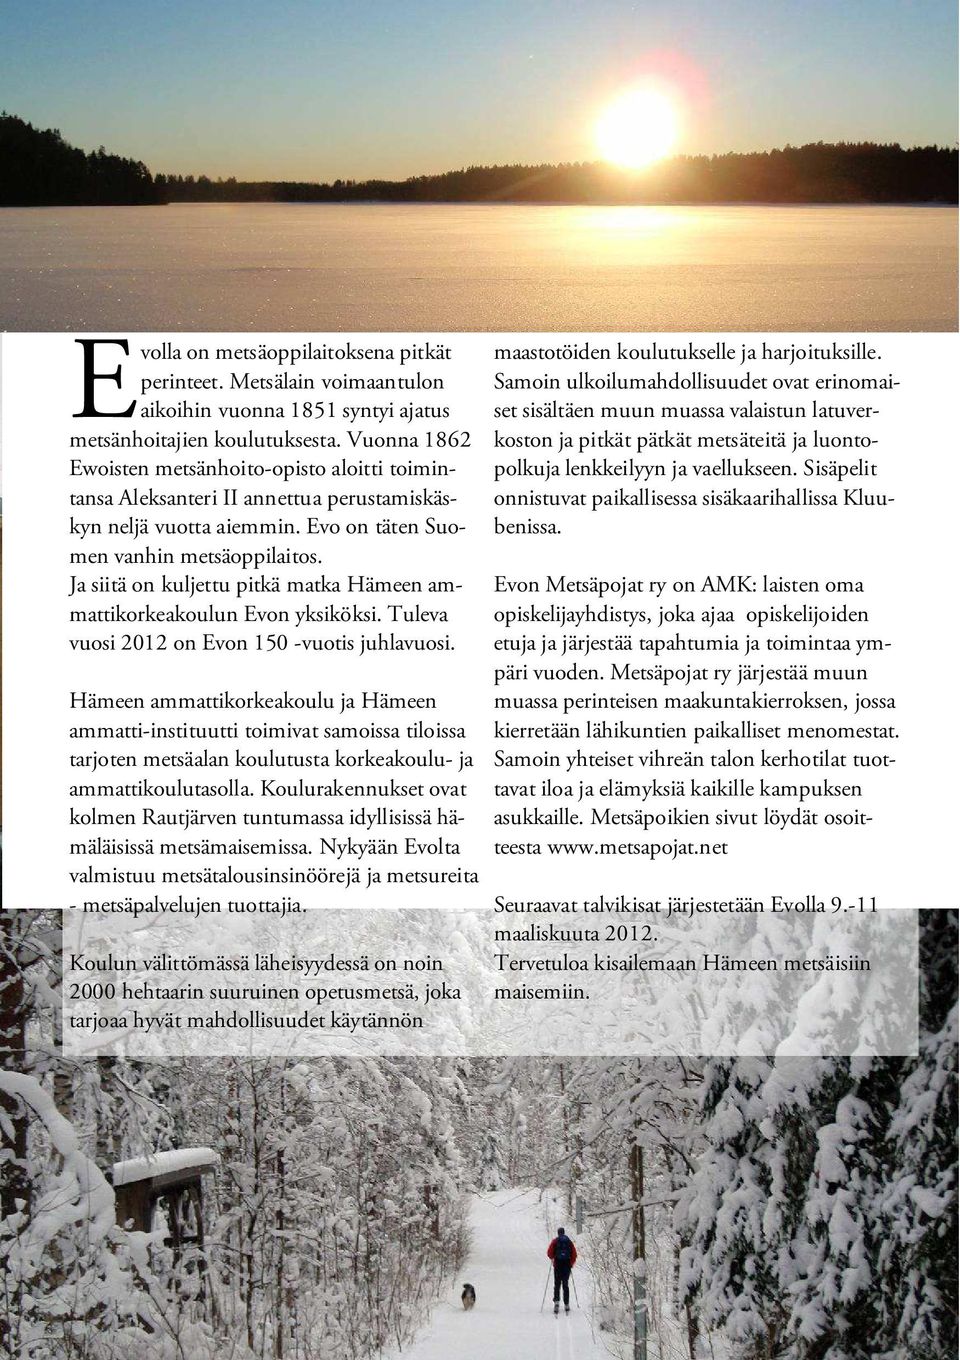 Ja siitä on kuljettu pitkä matka Hämeen ammattikorkeakoulun Evon yksiköksi. Tuleva vuosi 2012 on Evon 150 -vuotis juhlavuosi. maastotöiden koulutukselle ja harjoituksille.